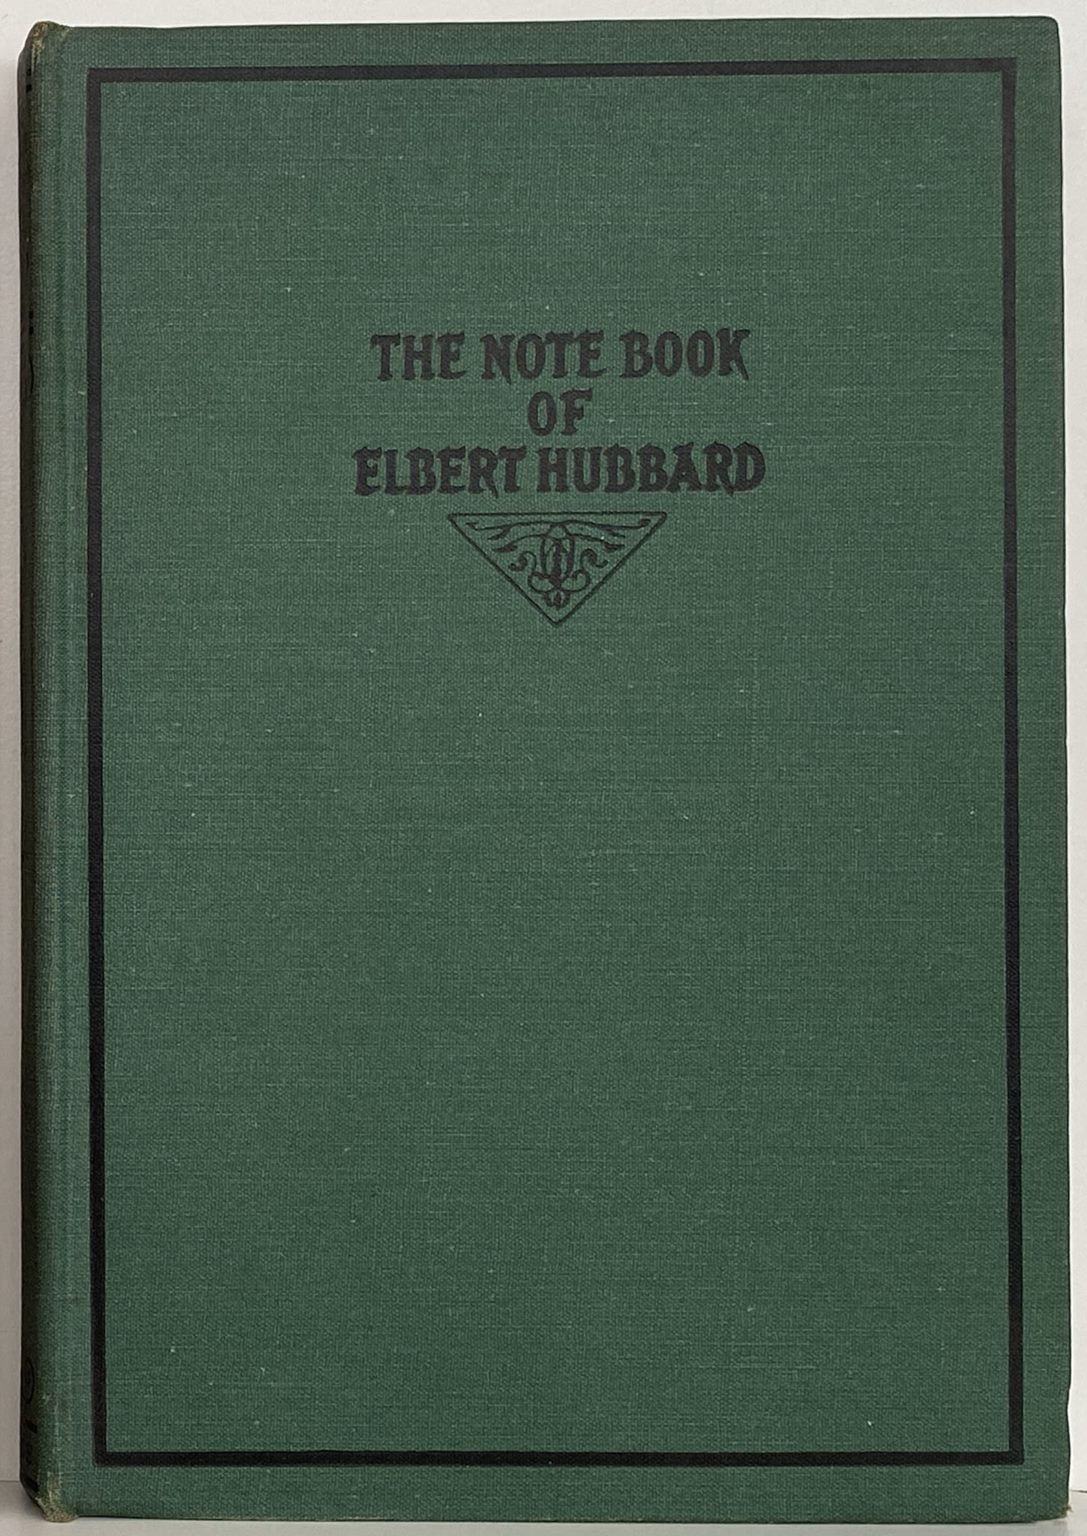 THE NOTE BOOK of Elbert Hubbard